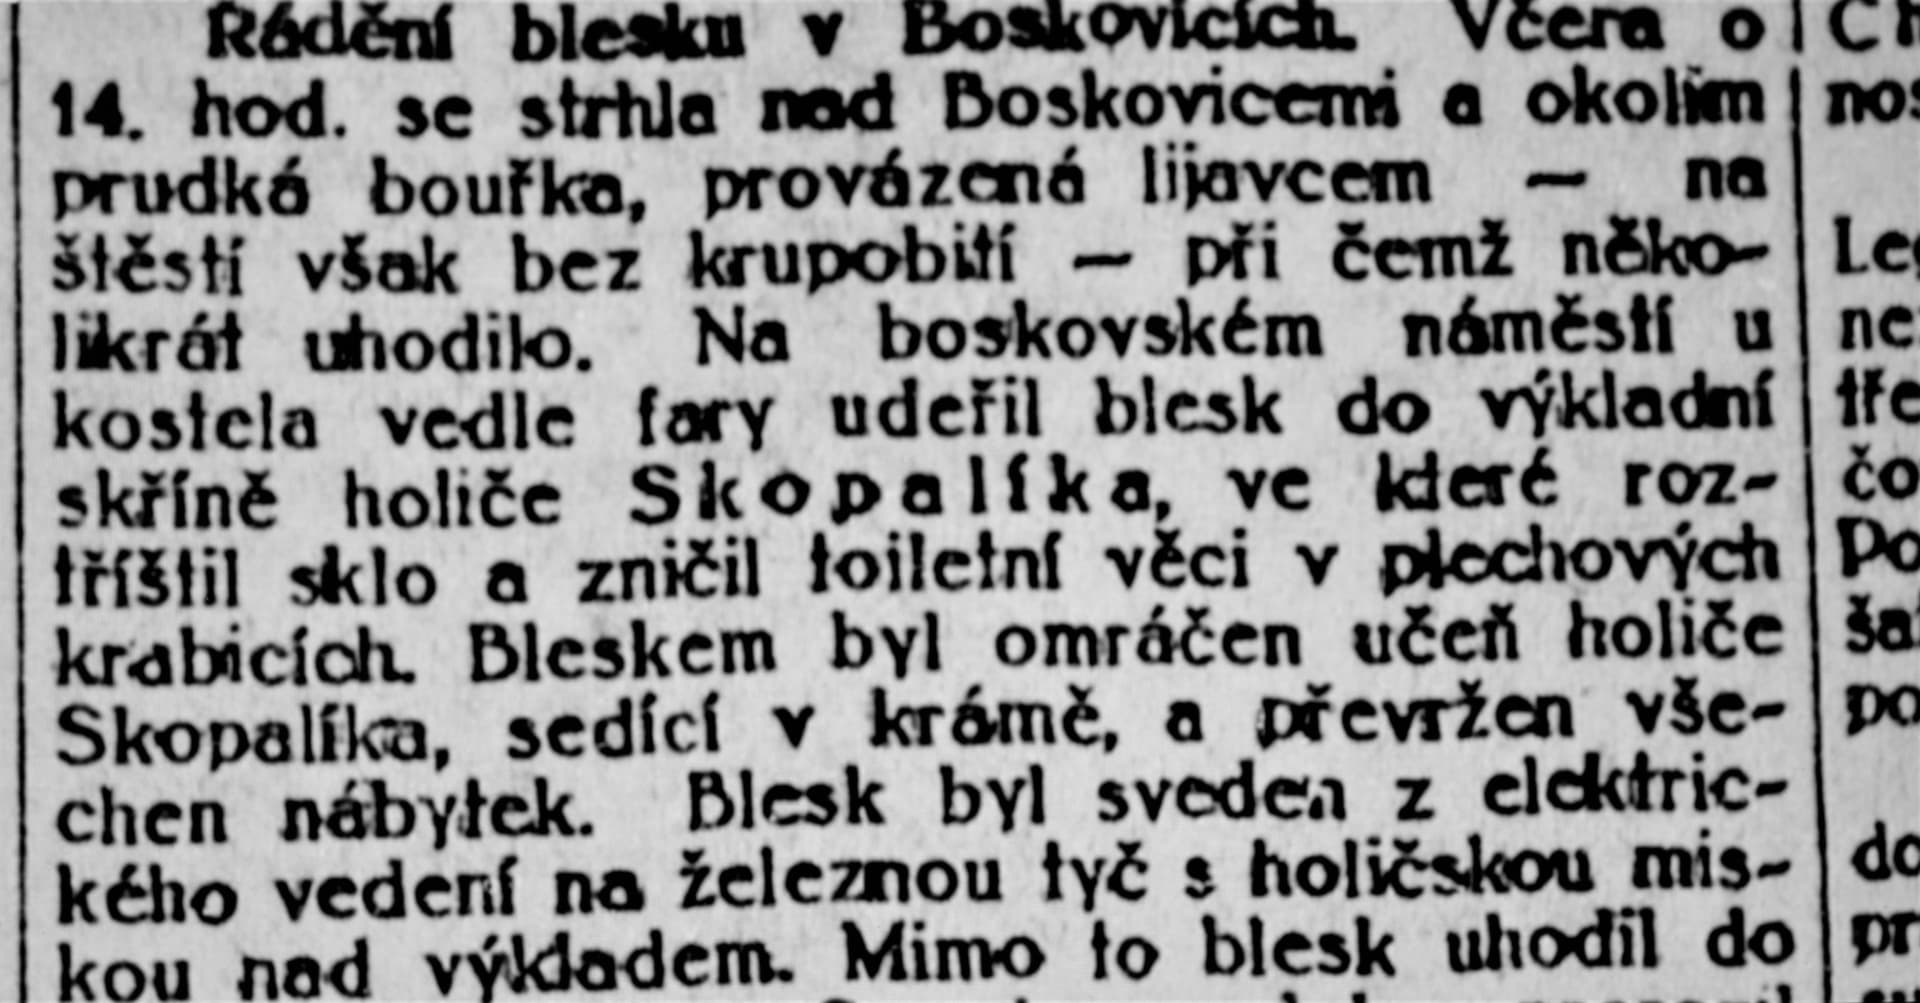 Bizarní zásah blesku do holičského krámu v Boskovicích v roce 1927